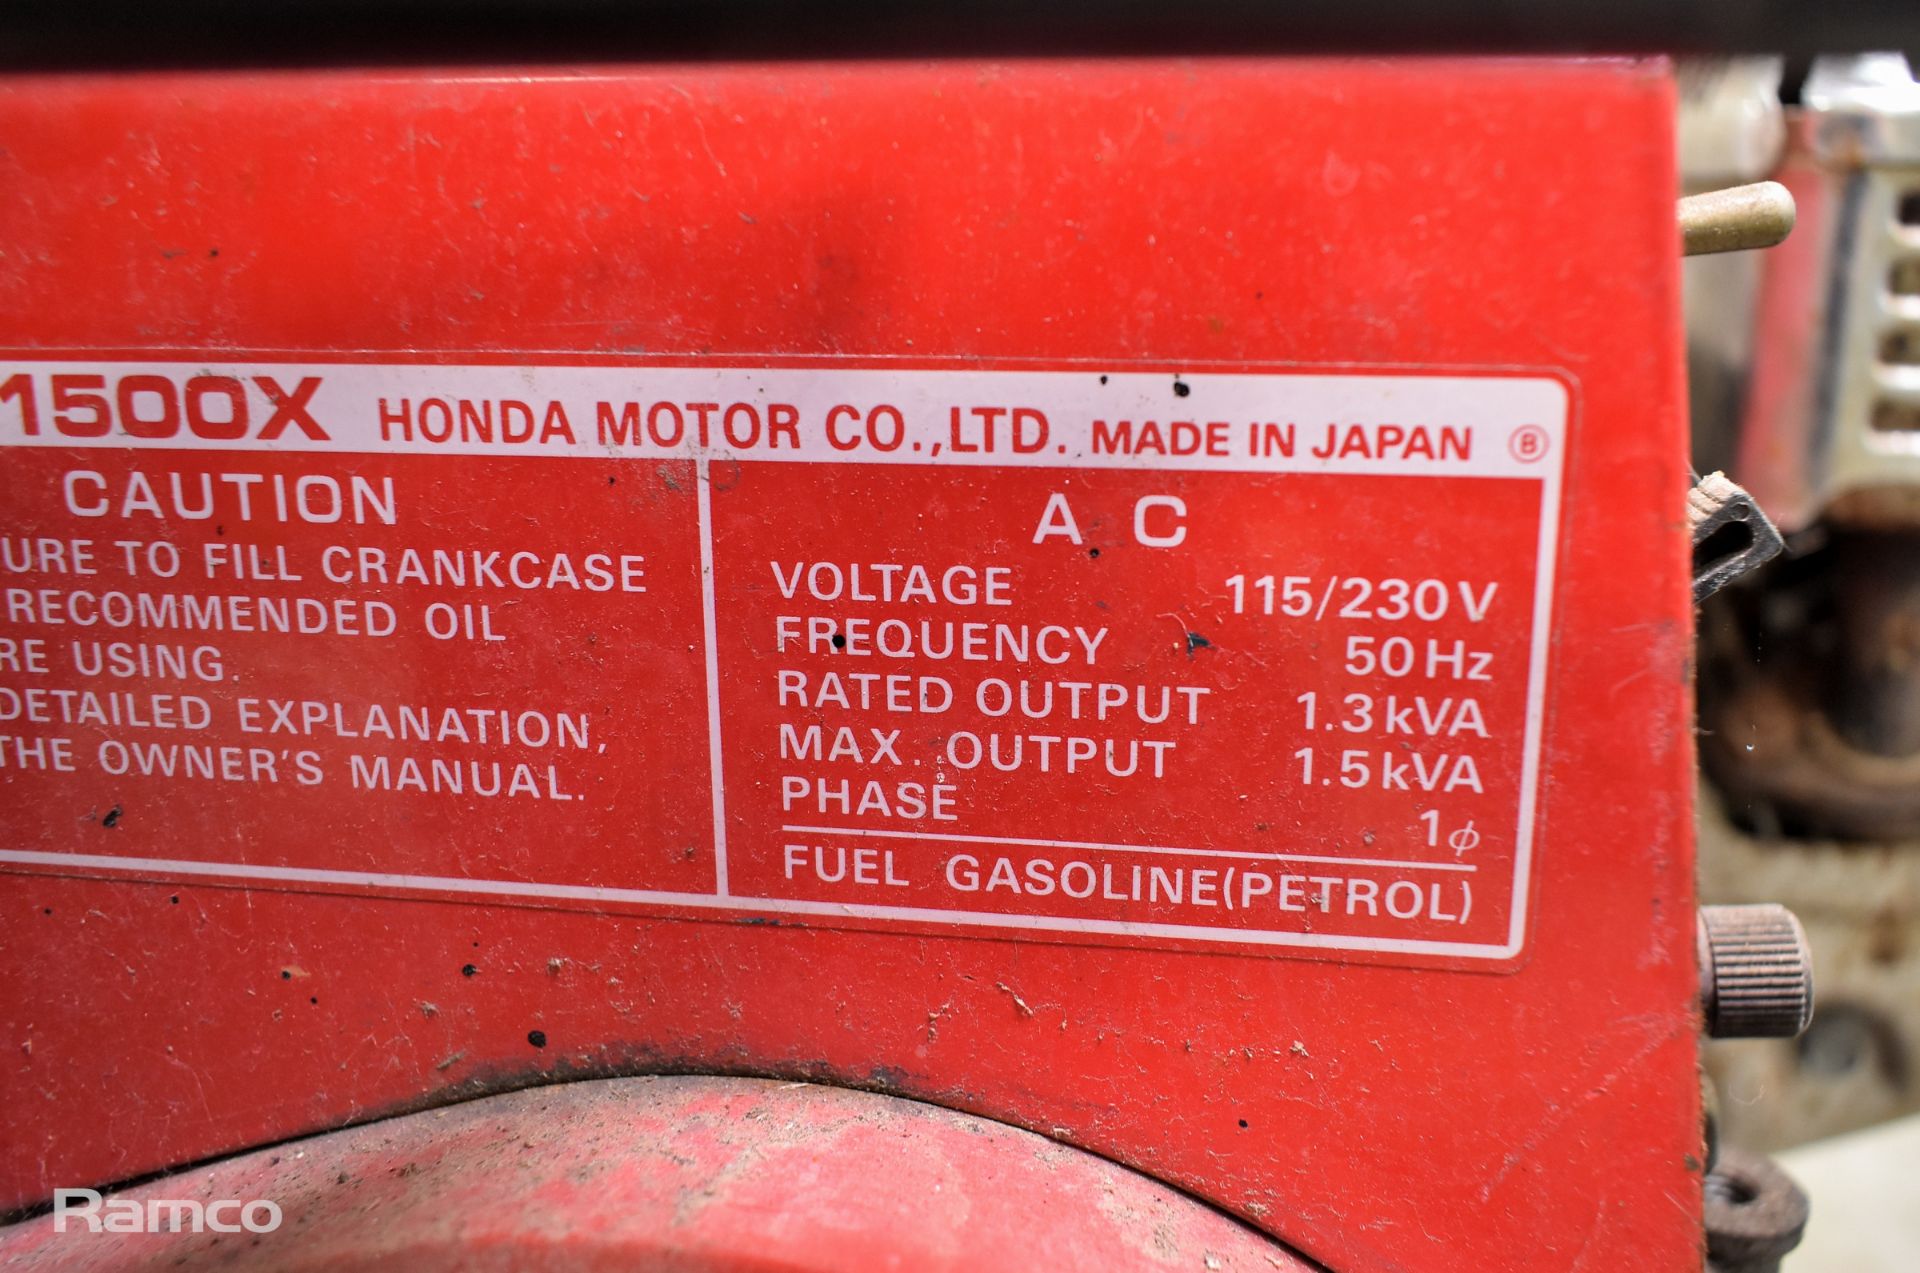 Honda EG1500X petrol powered generator - Image 3 of 6